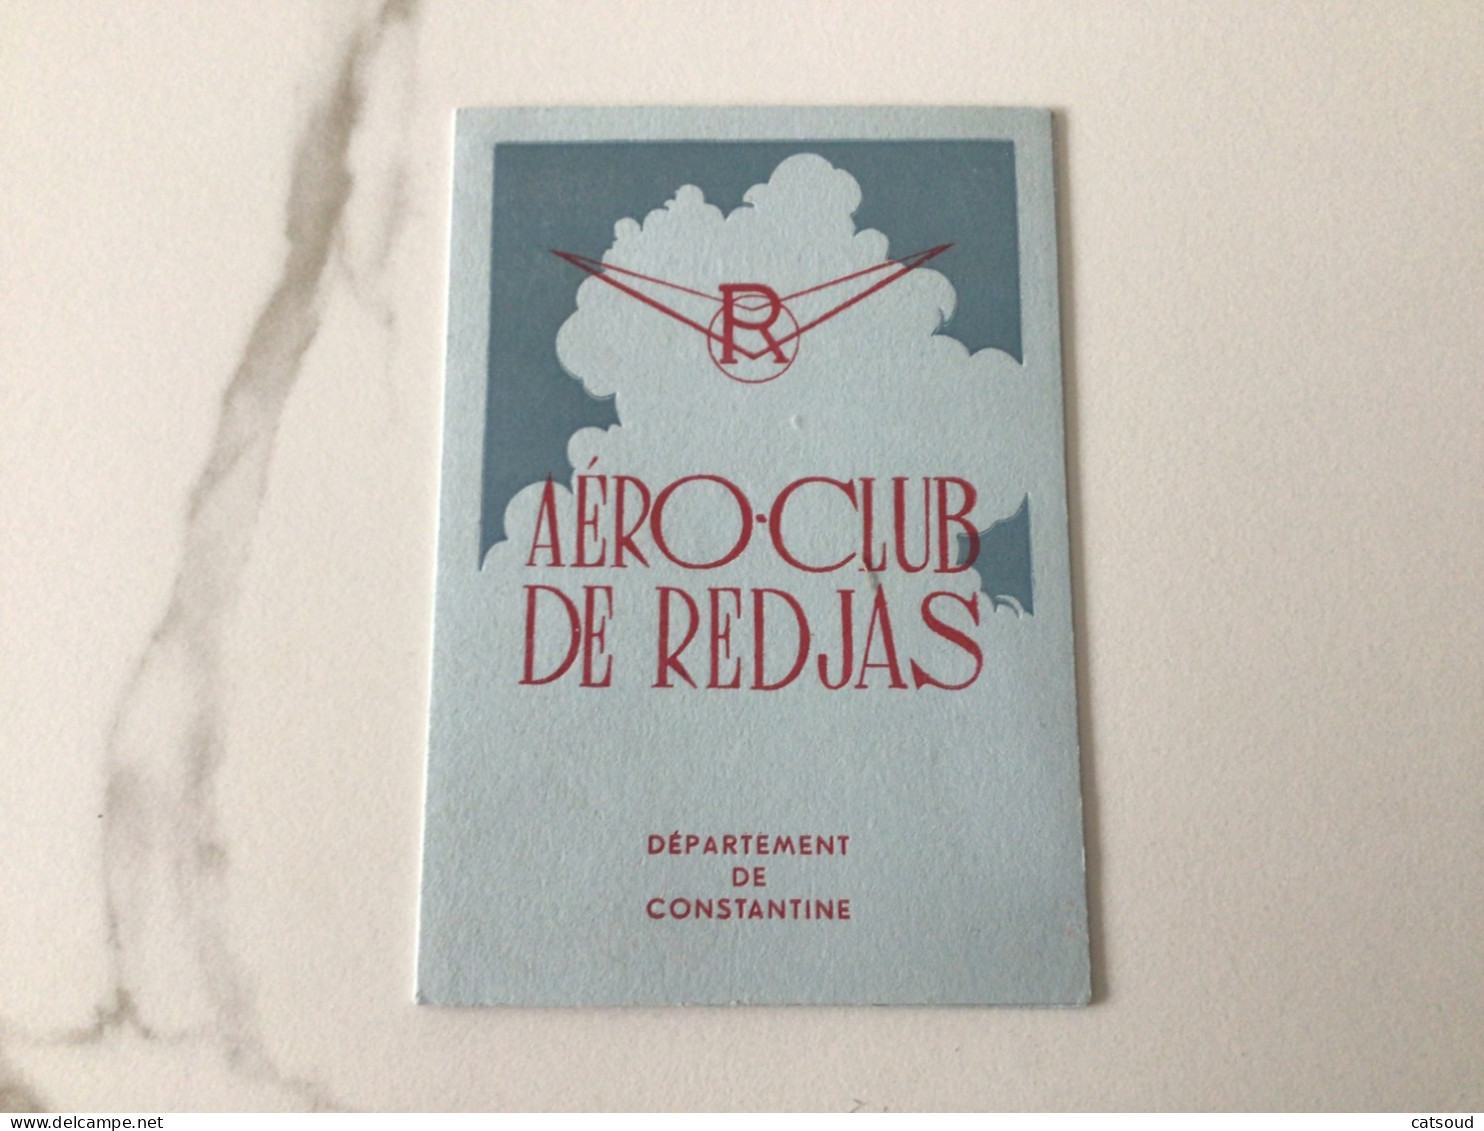 Ancienne Carte De Membre (1950) AÉRO-CLUB DE REDJAS Jacqueline COUSIN - Membership Cards